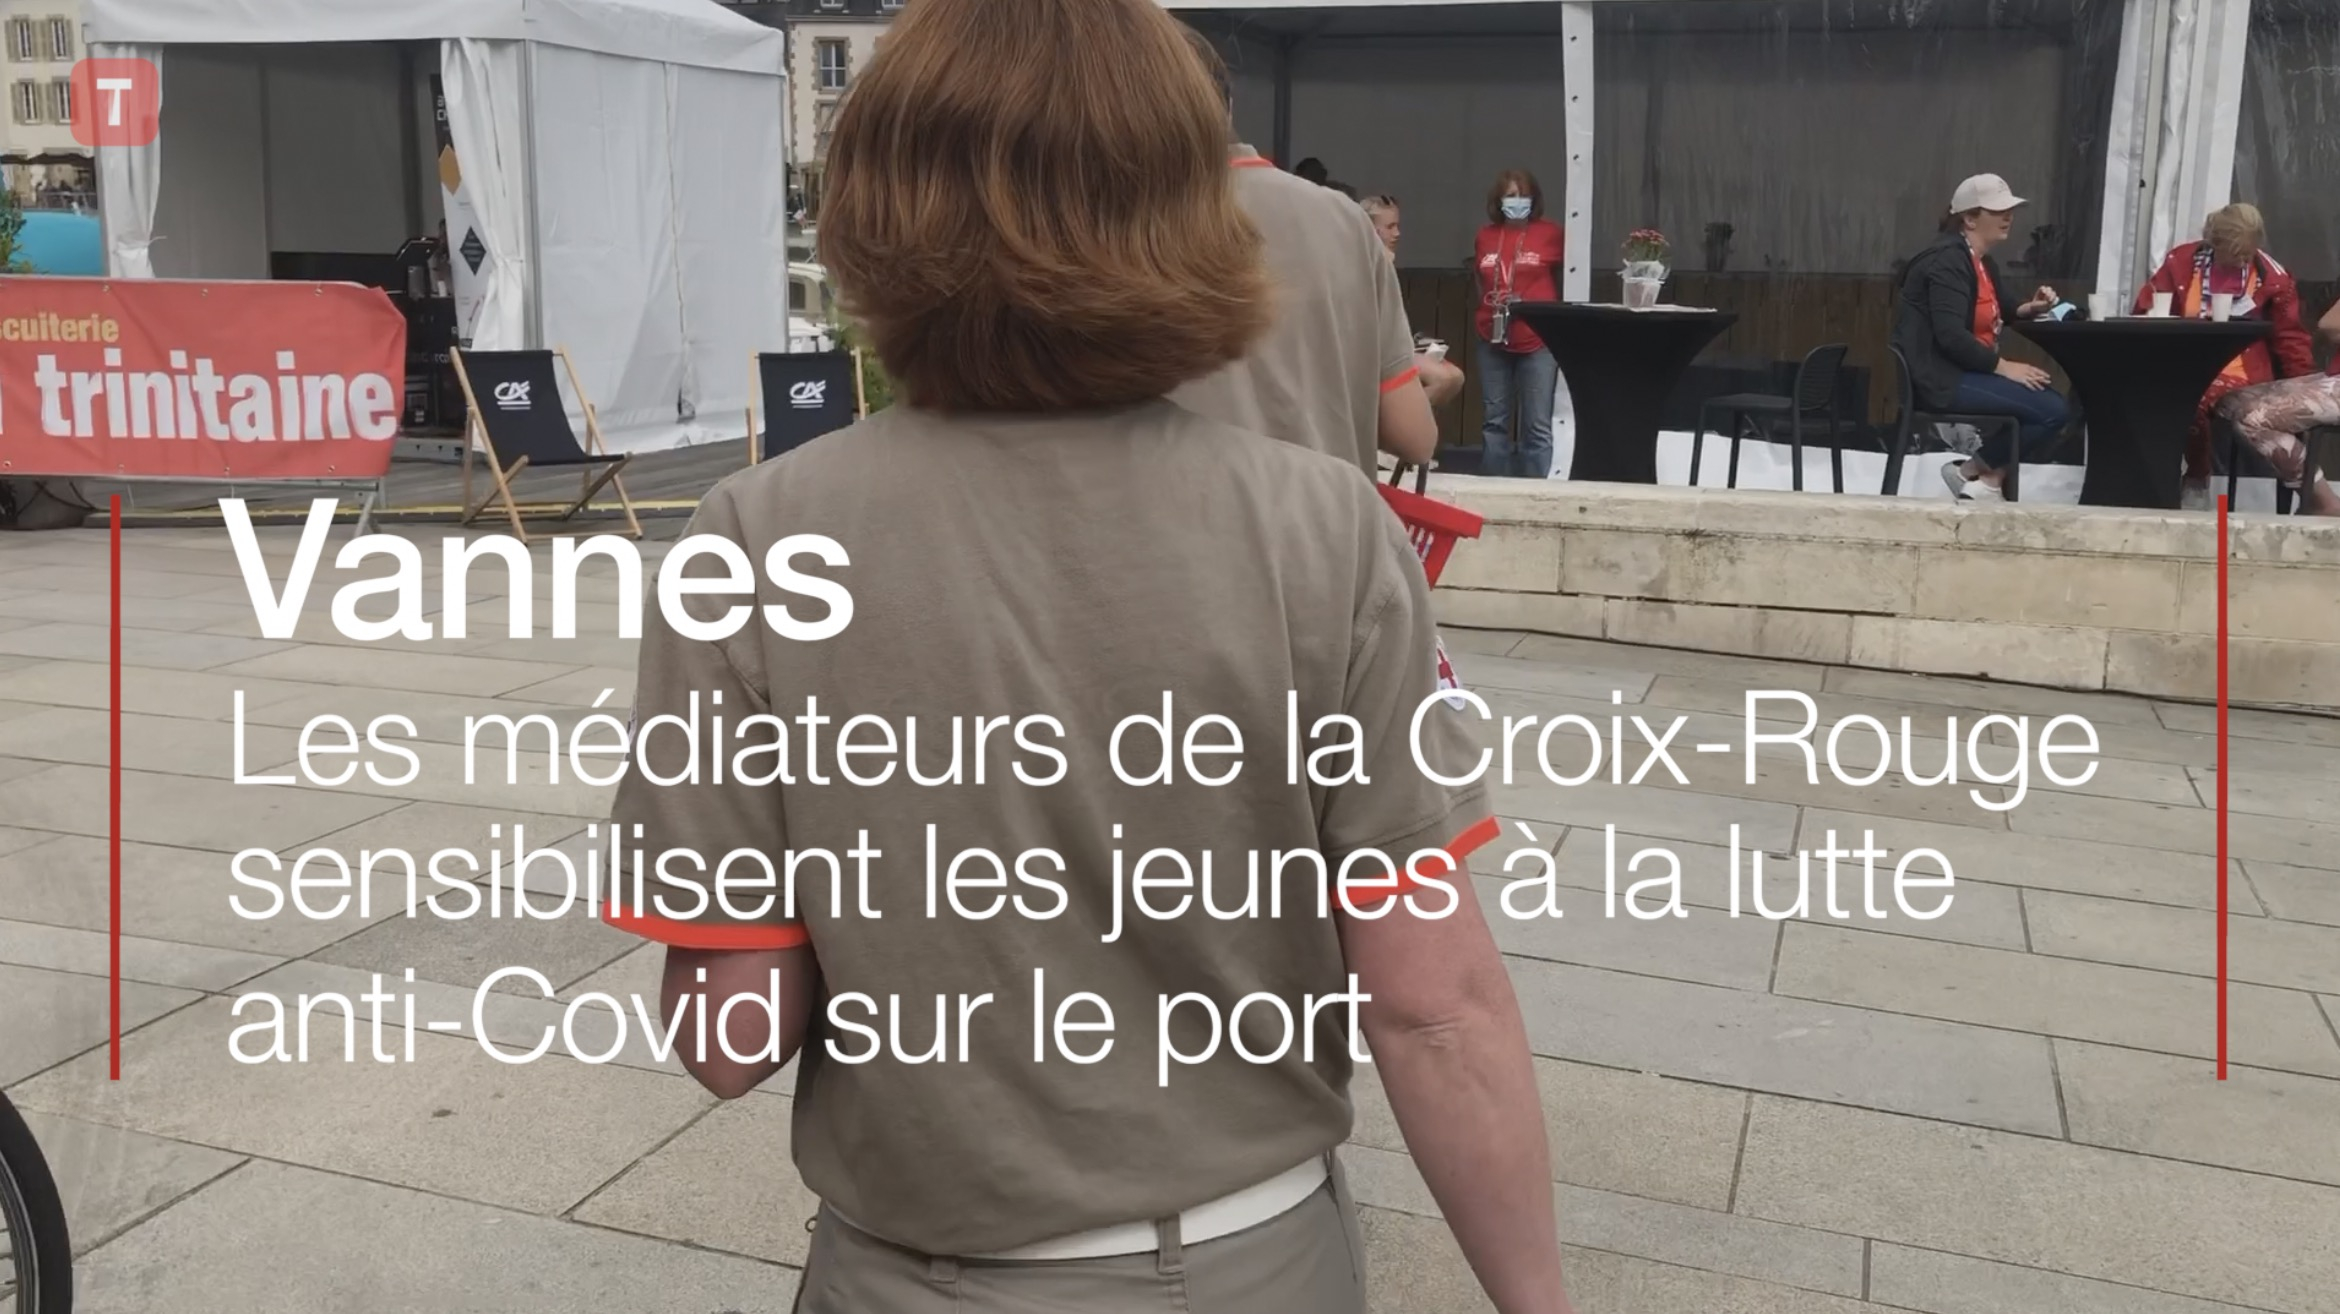 Vannes. Les médiateurs de la Croix-Rouge sensibilisent les jeunes à la lutte anti-Covid sur le port (Le Télégramme)